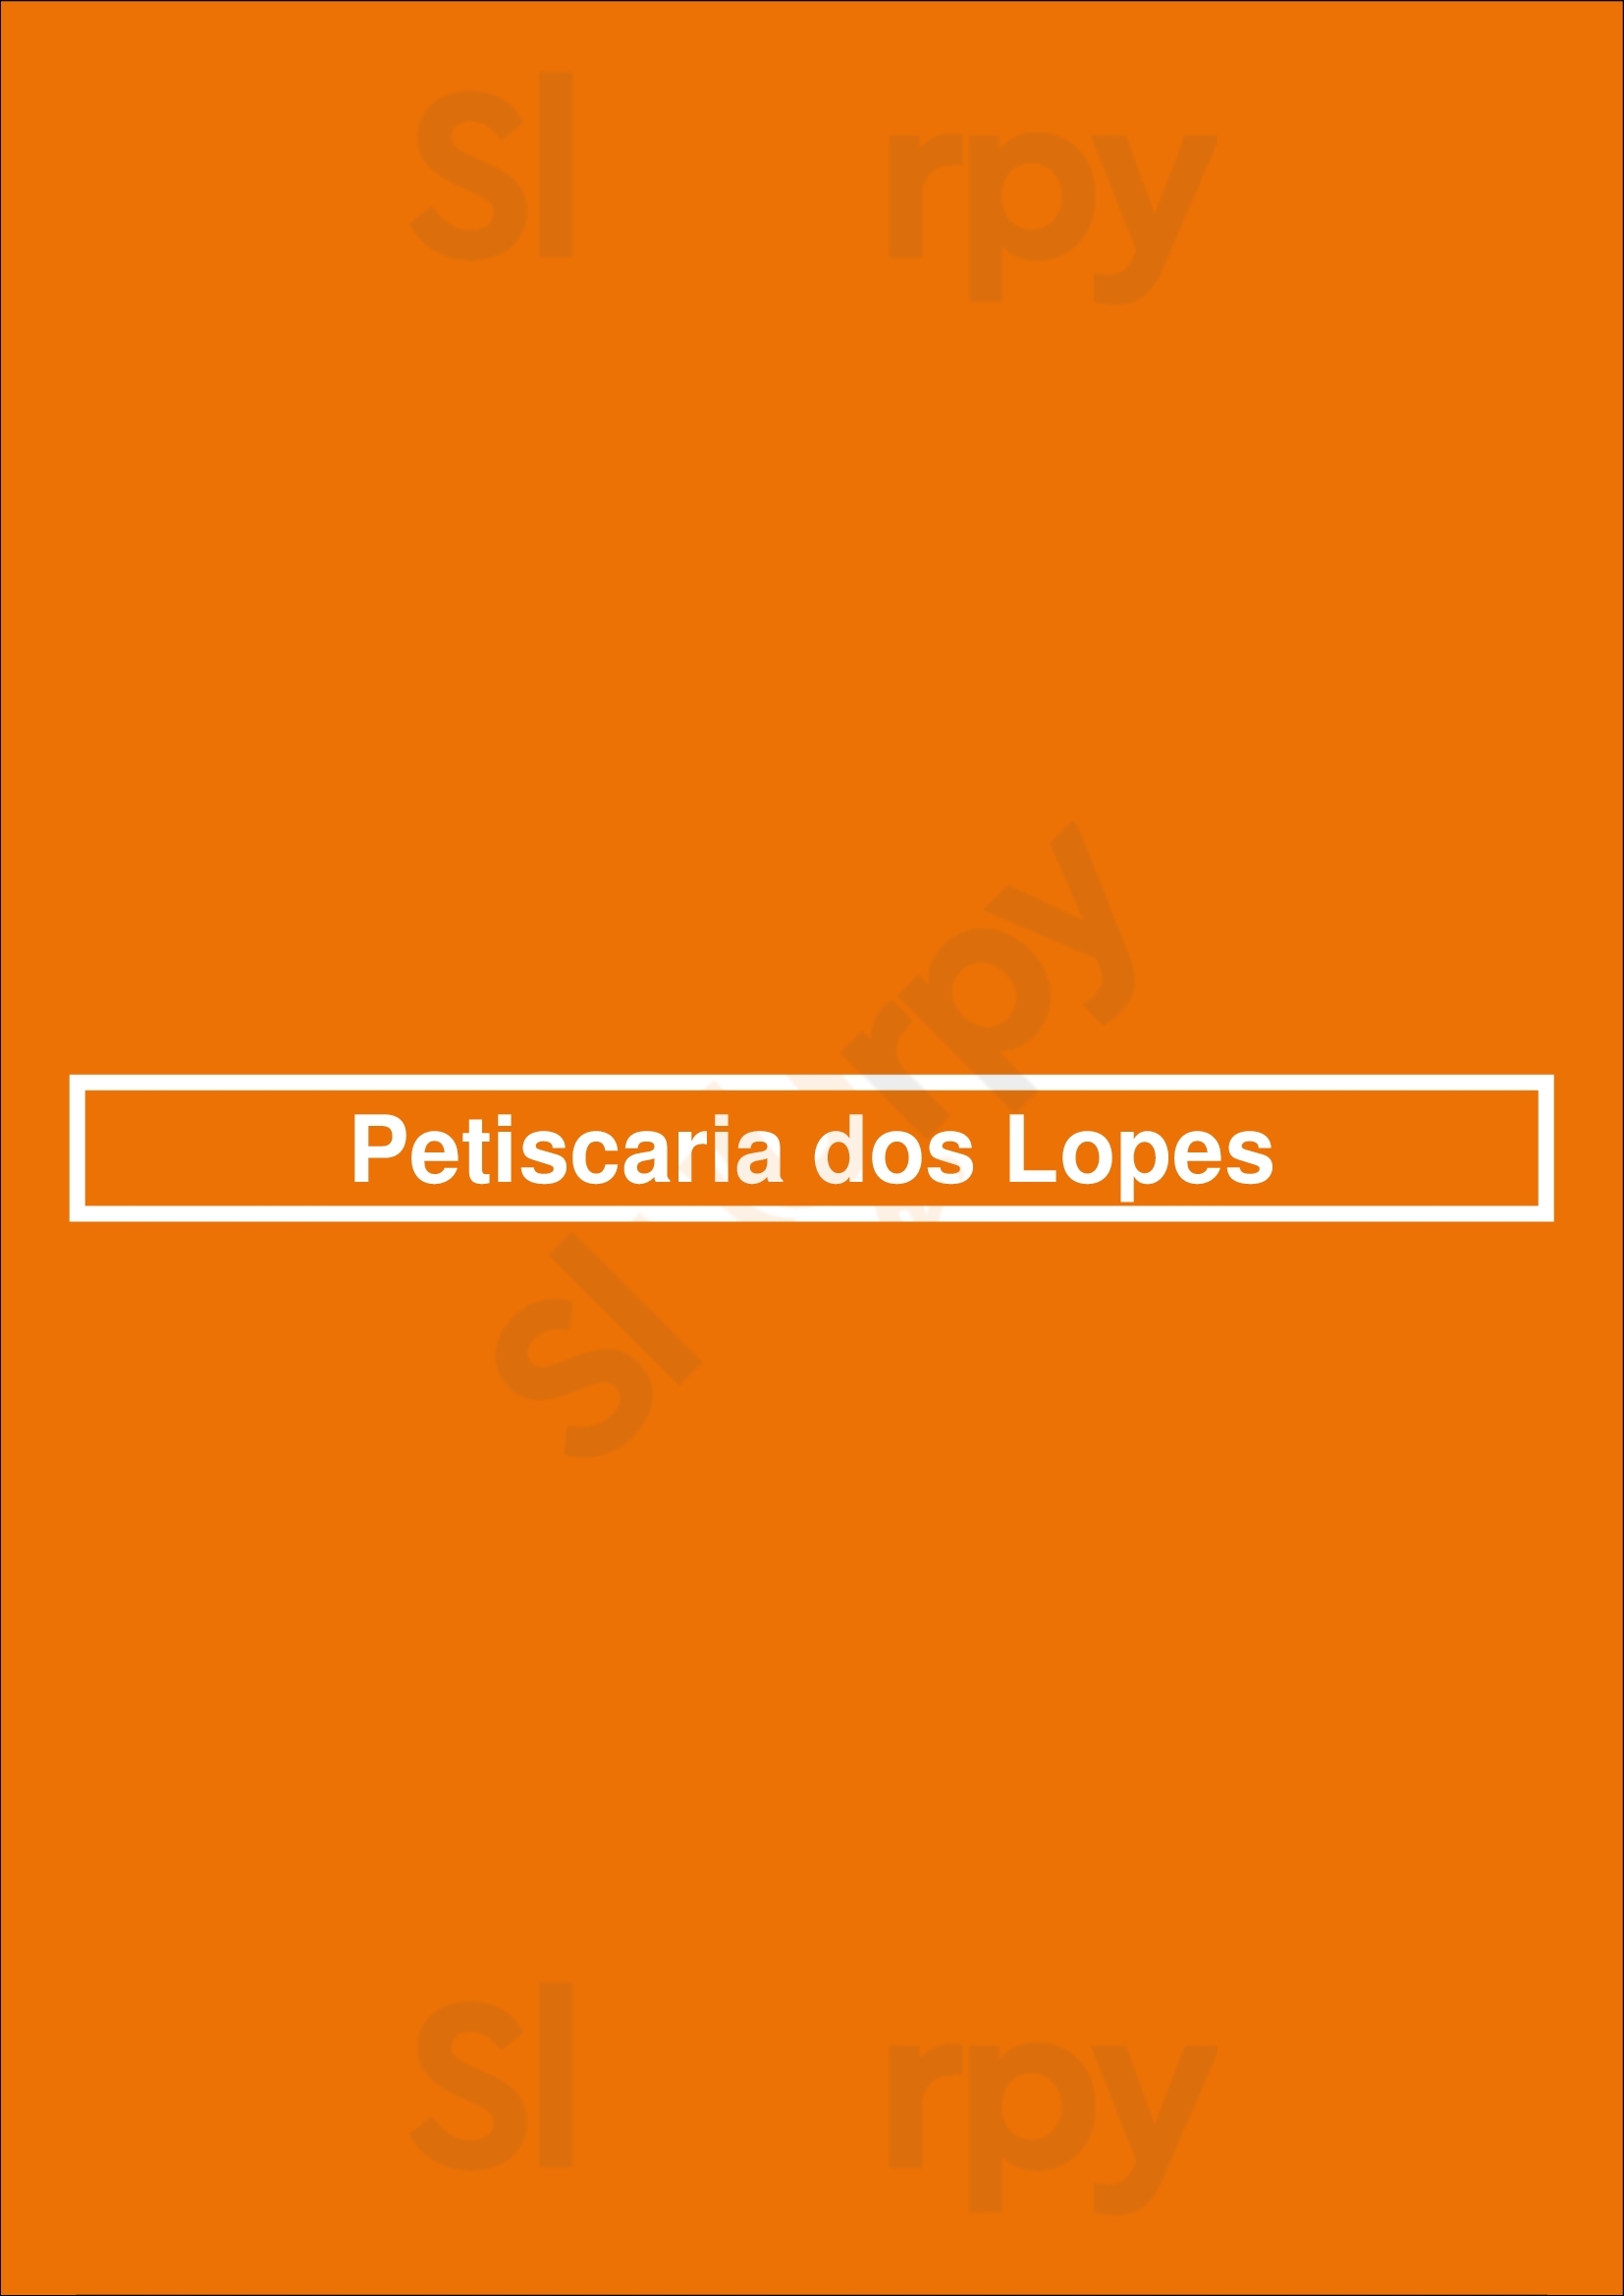 Petiscaria Dos Lopes Évora Menu - 1